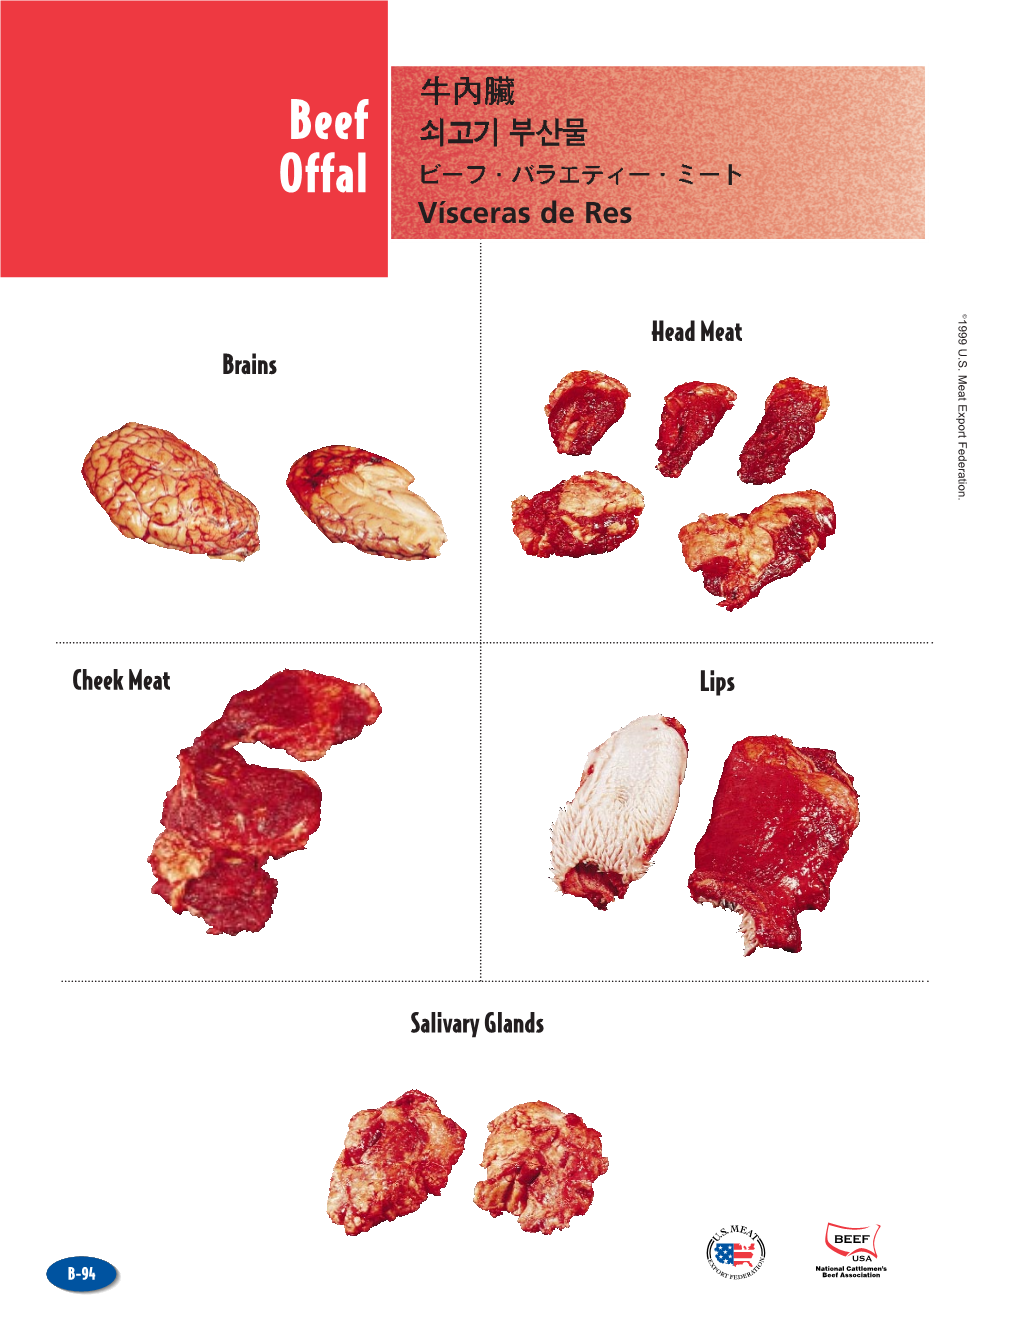 Beef Offal Vísceras De Res © Head Meat 1999 U.S